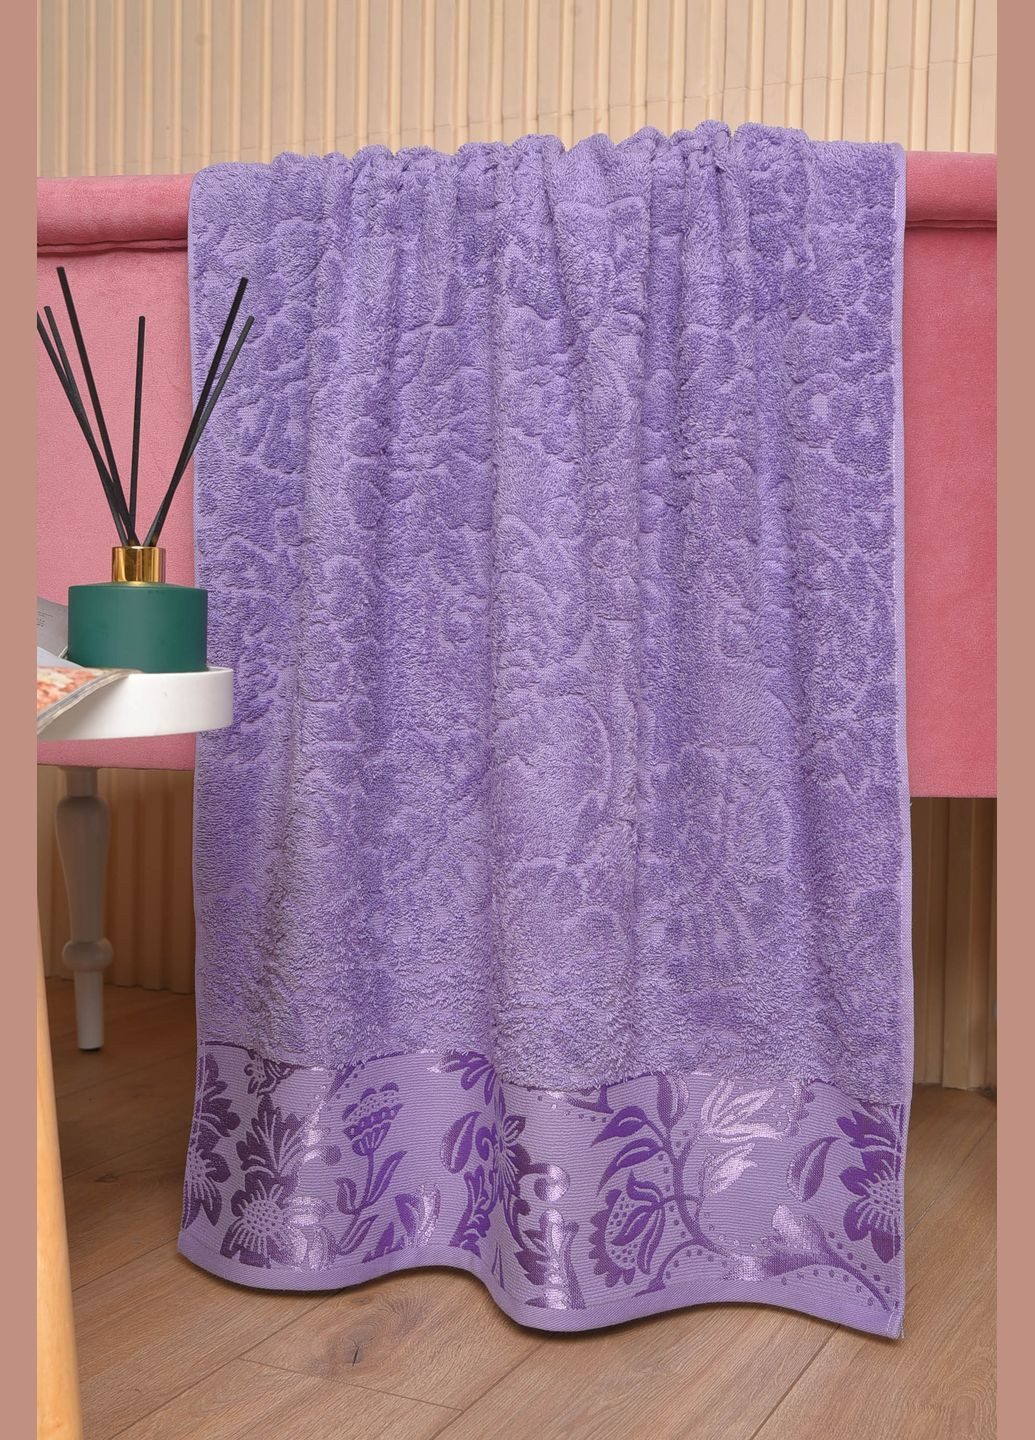 Let's Shop полотенце банное махровое фиолетового цвета однотонный фиолетовый производство - Турция